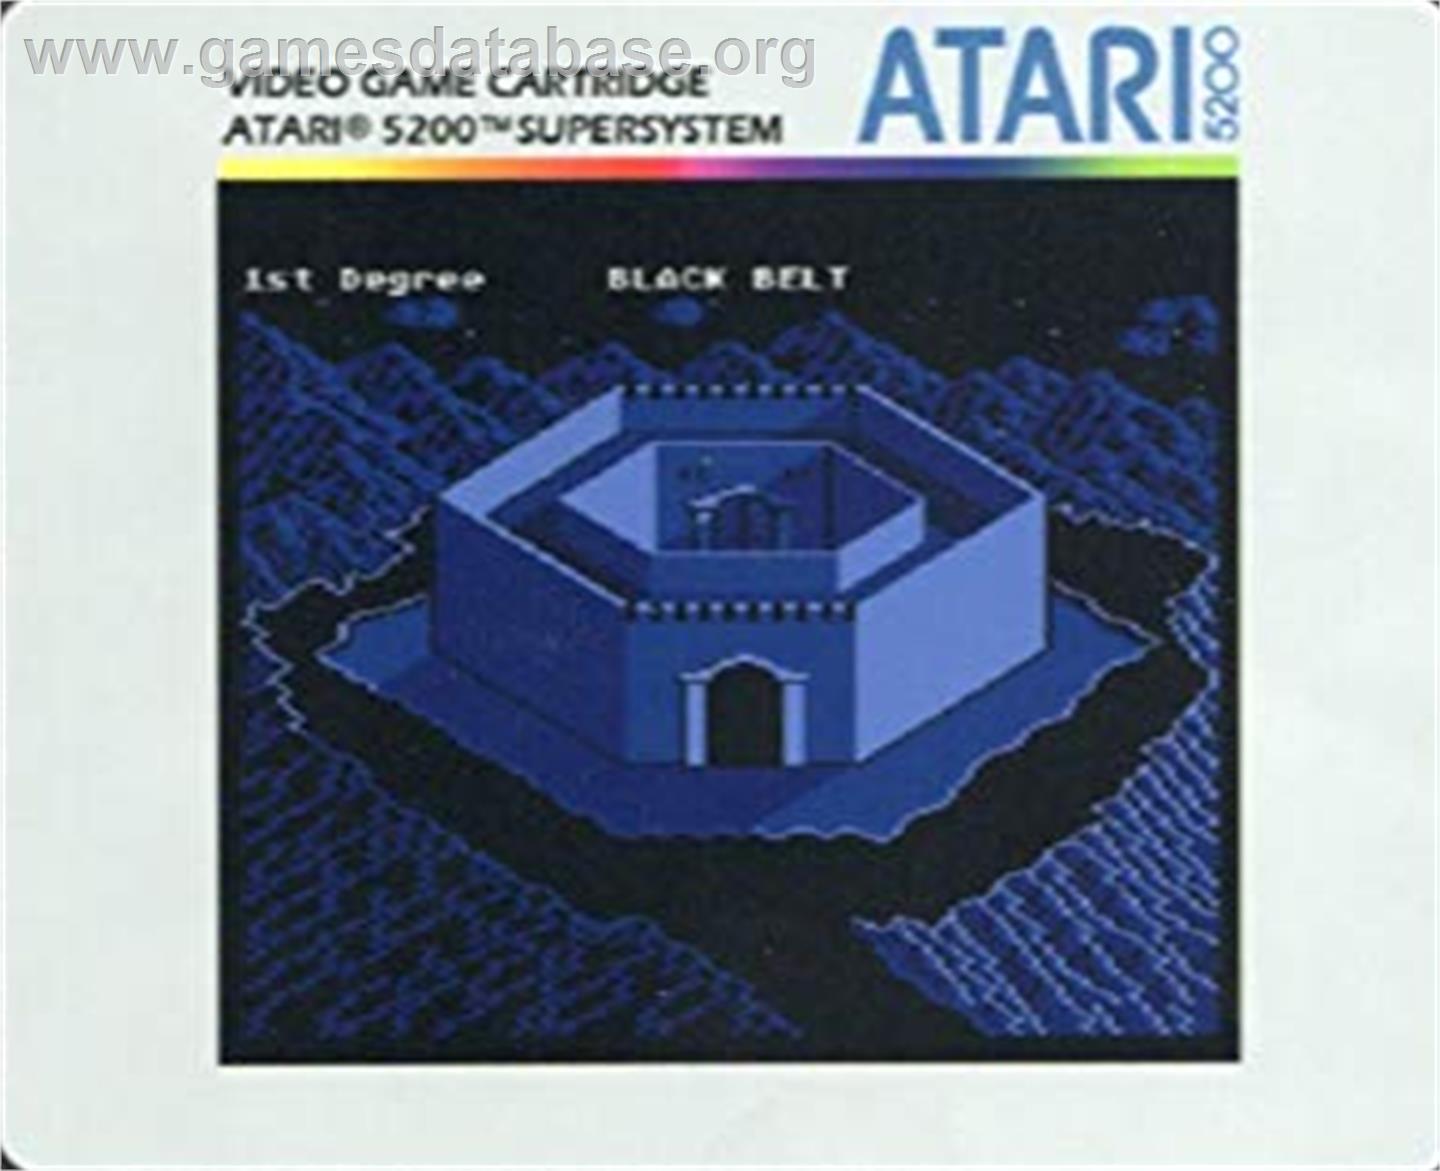 Black Belt - Atari 5200 - Artwork - Cartridge Top